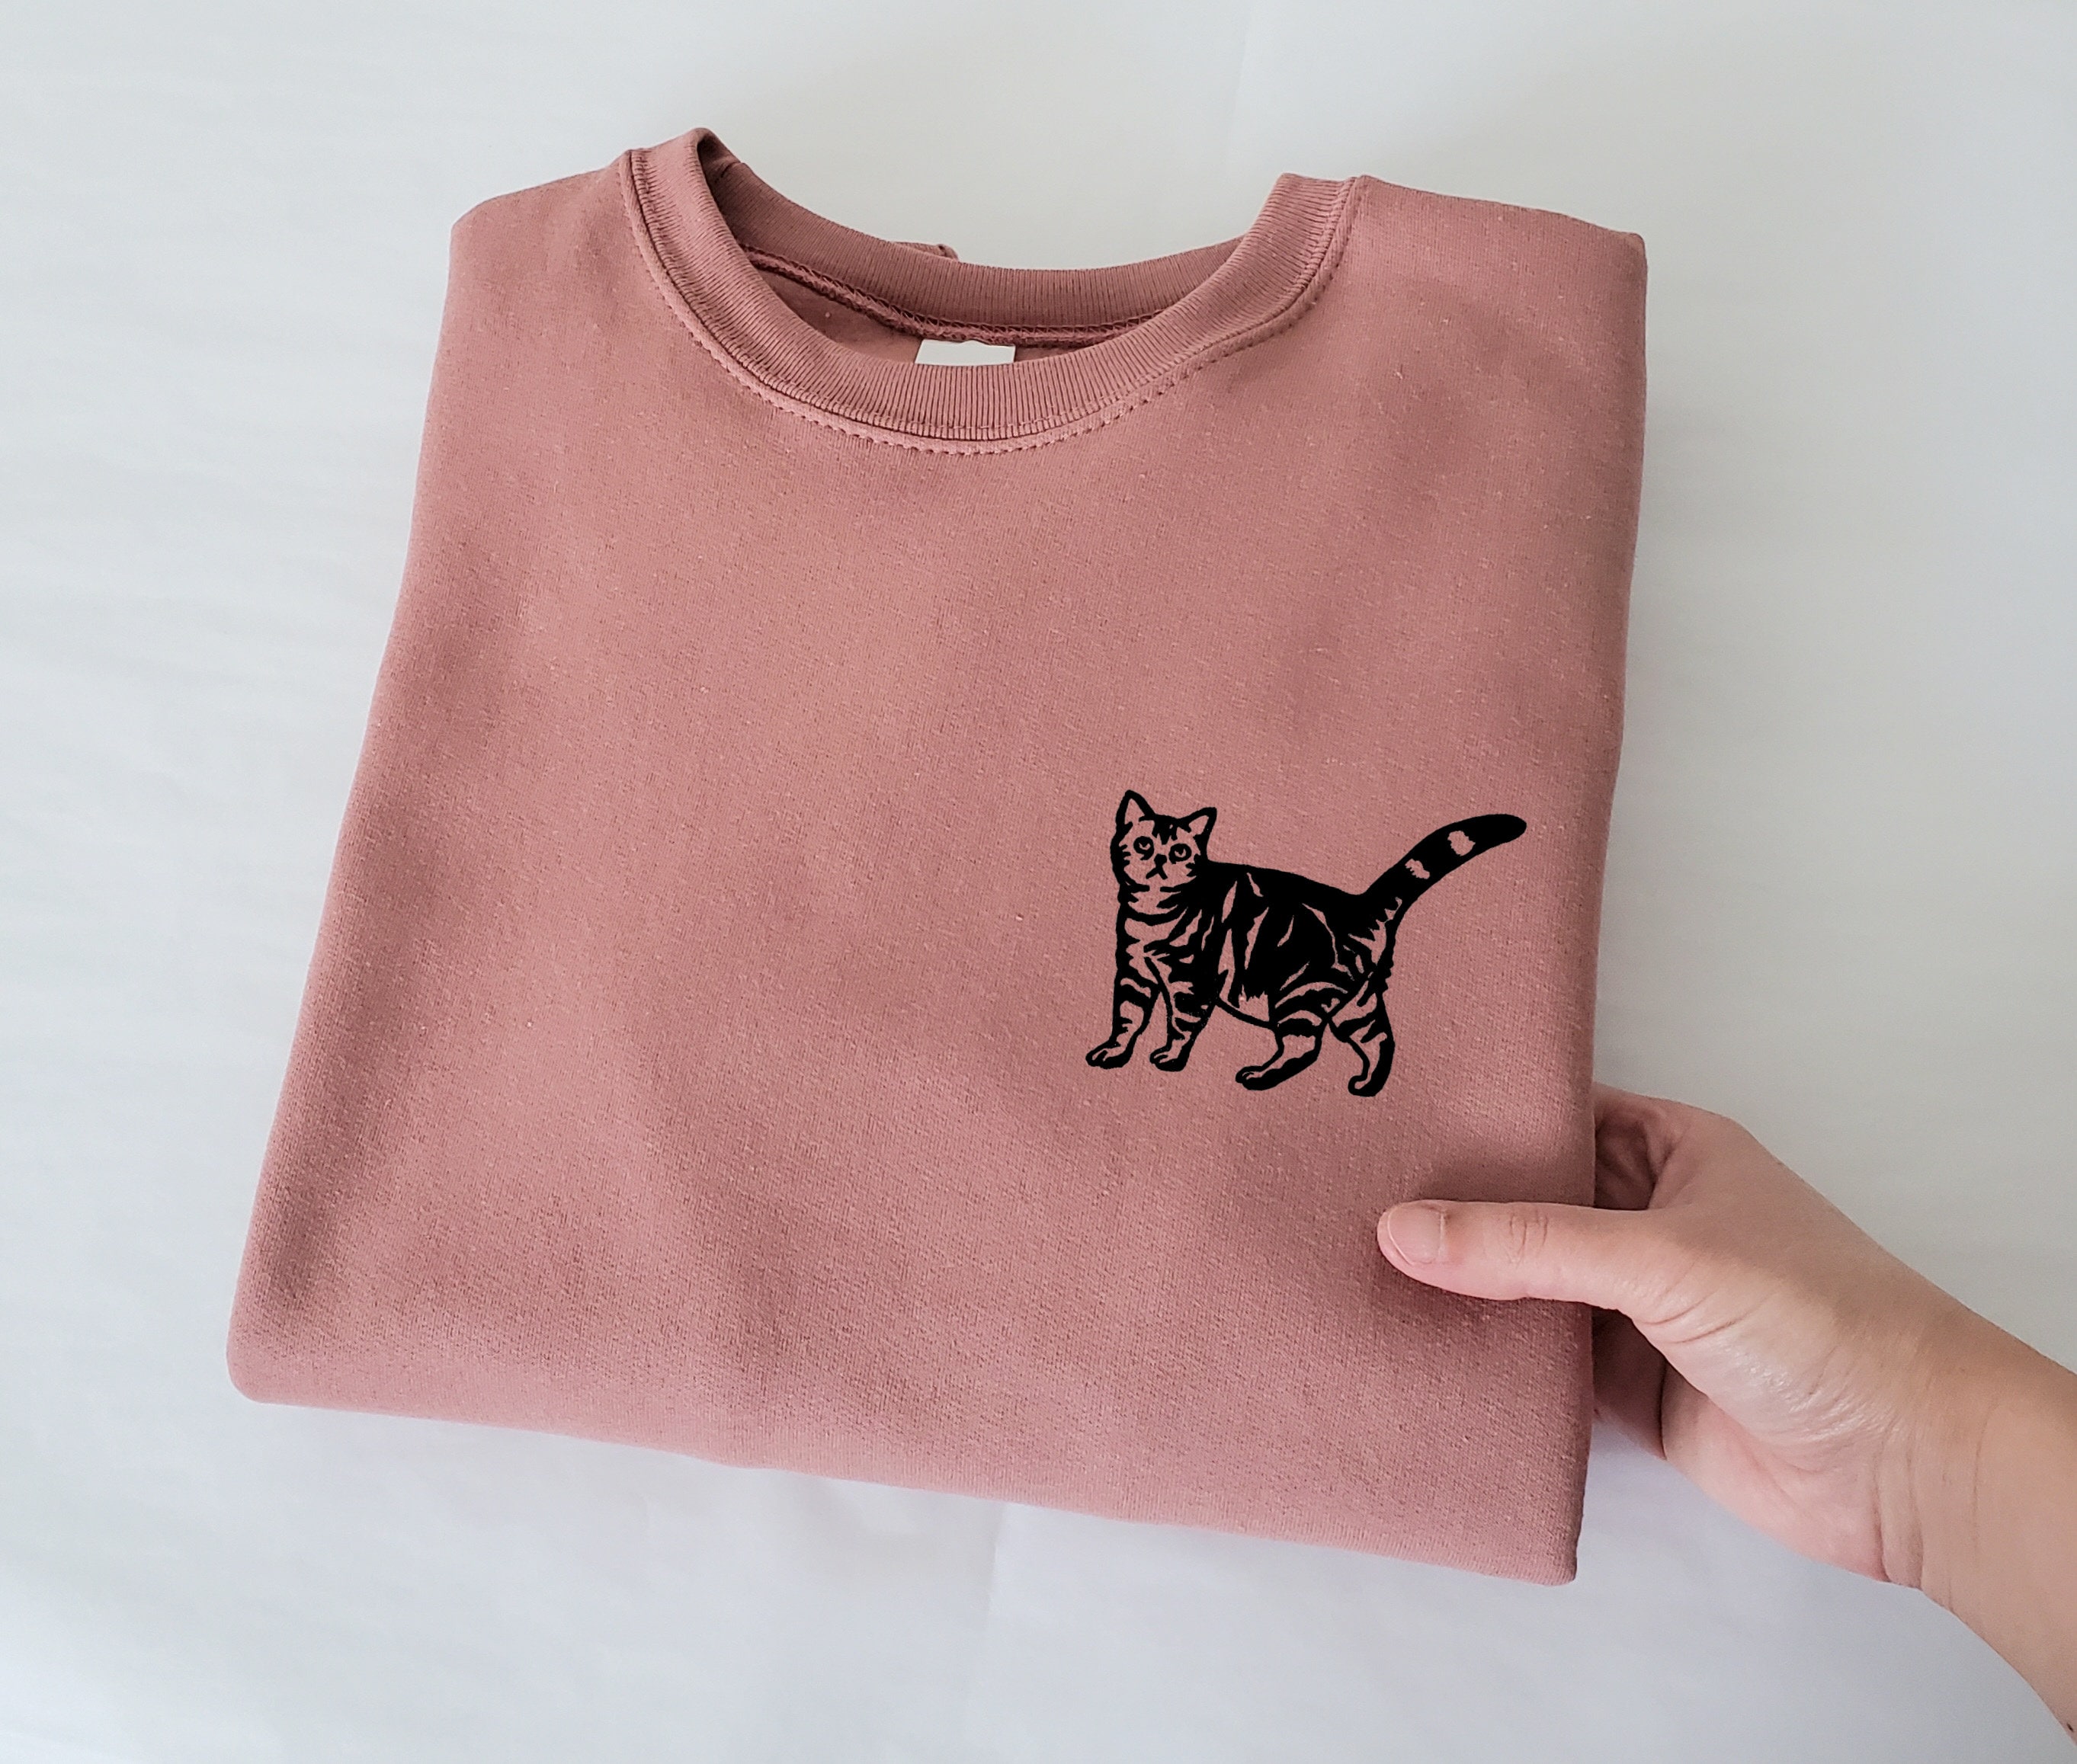 Sudadera de gato, suéter unisex impreso a mano, lindo gatito, regalo amante  de los gatos, estampado de gato del Himalaya, atigrado, gato negro, moda  ética -  México